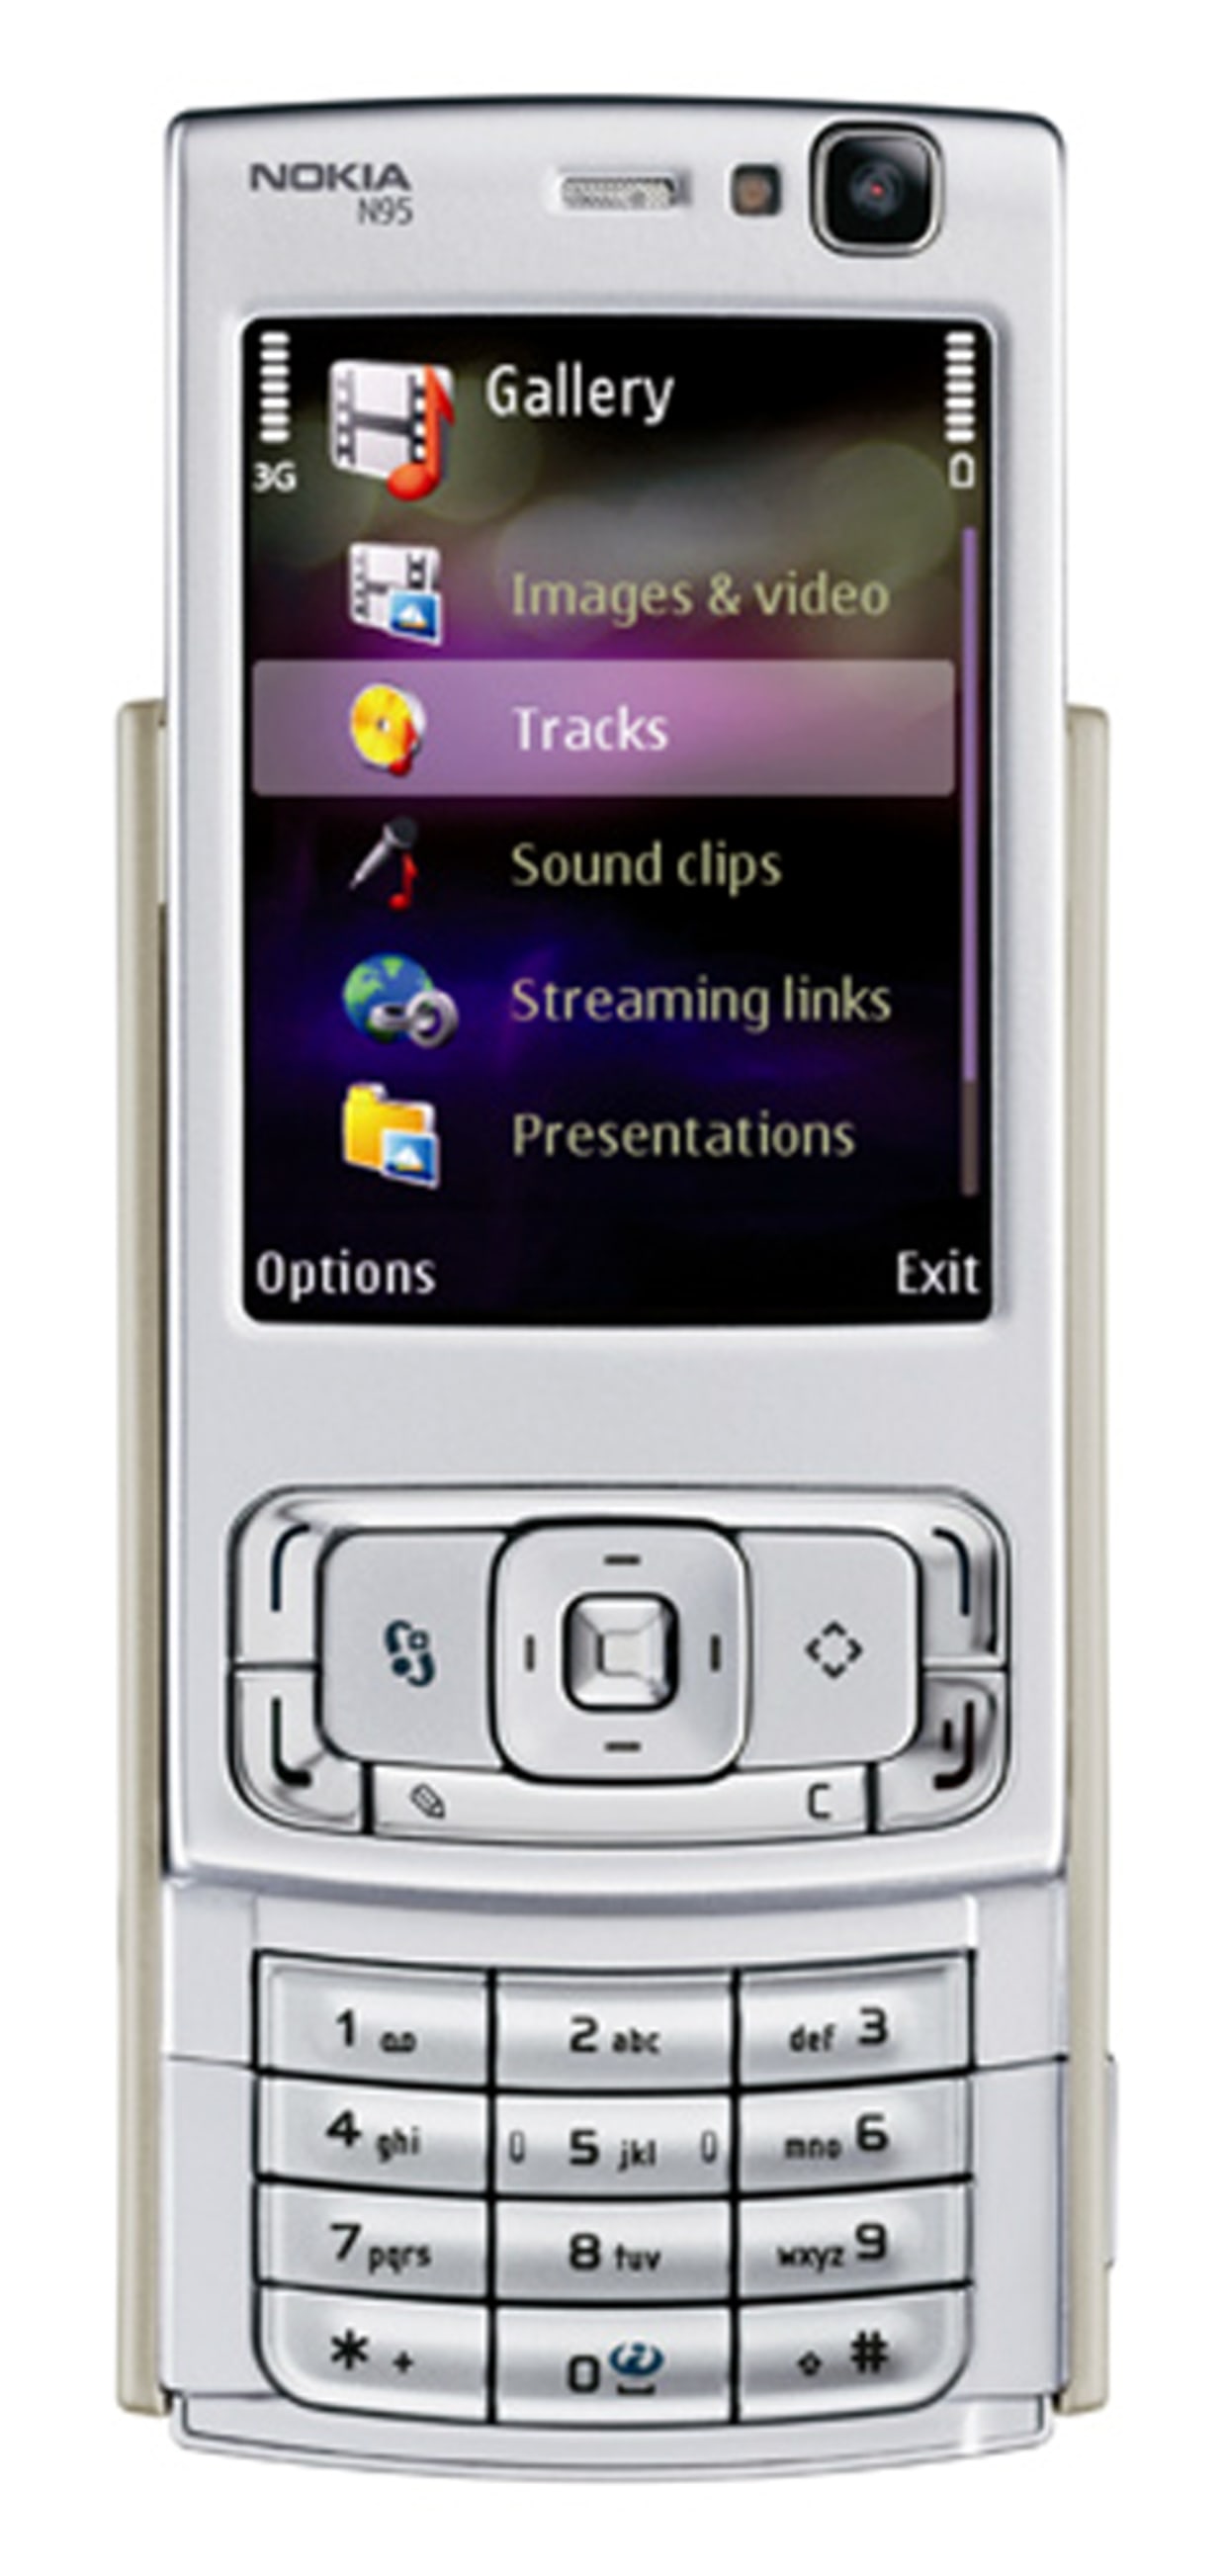 N95: jewel of Nokia